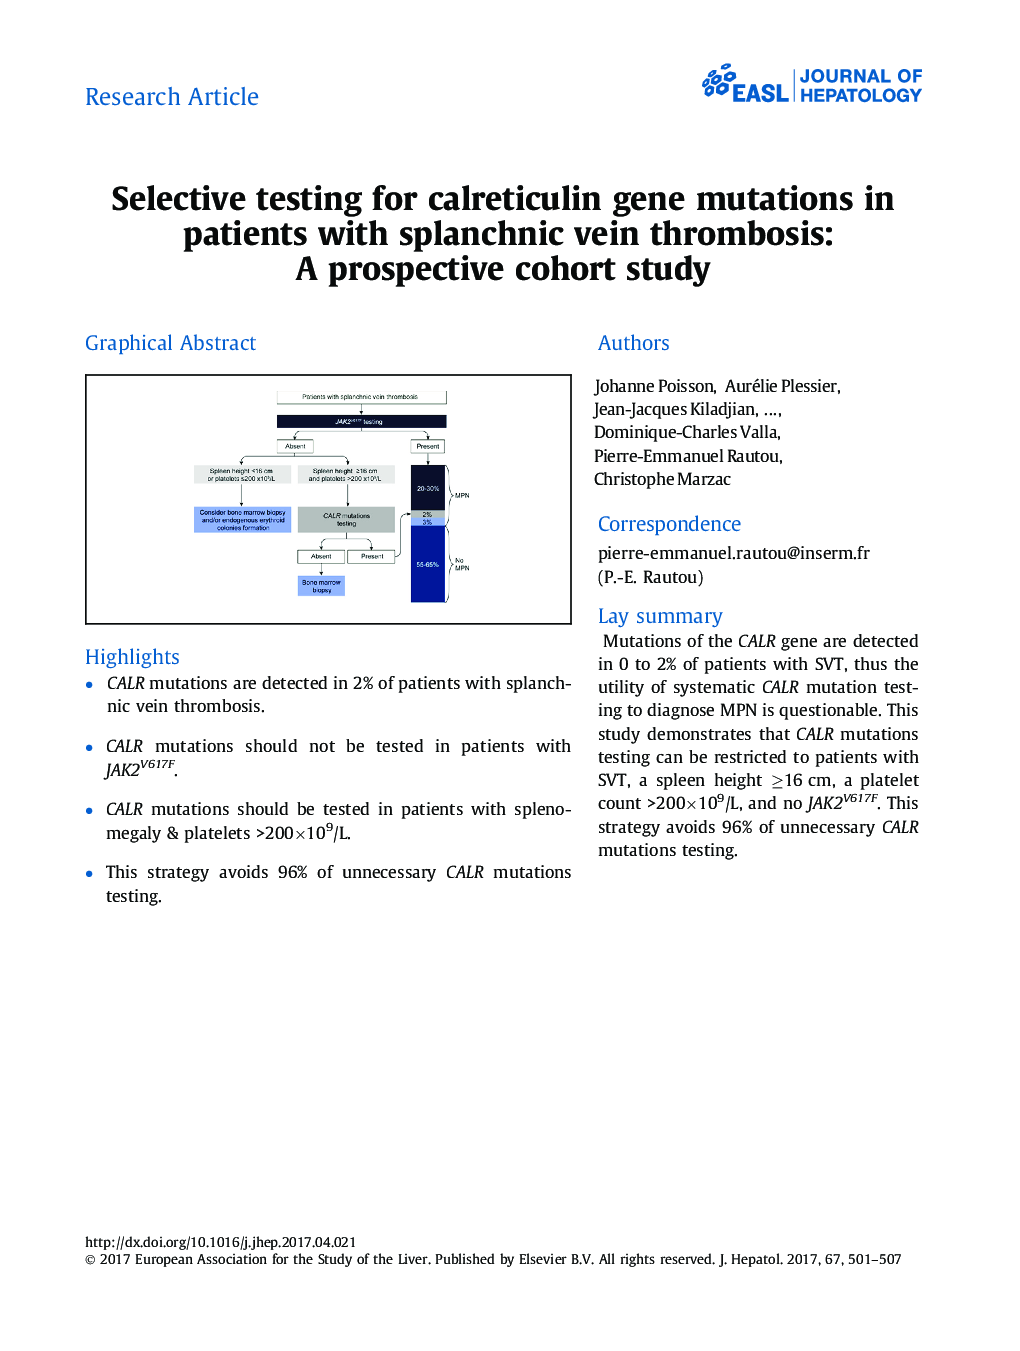 تست انتخابی برای جهش های ژن کلاترکتولین در بیماران مبتلا به ترومبوز ورید پلانژنی: یک مطالعه کوهورت آینده 